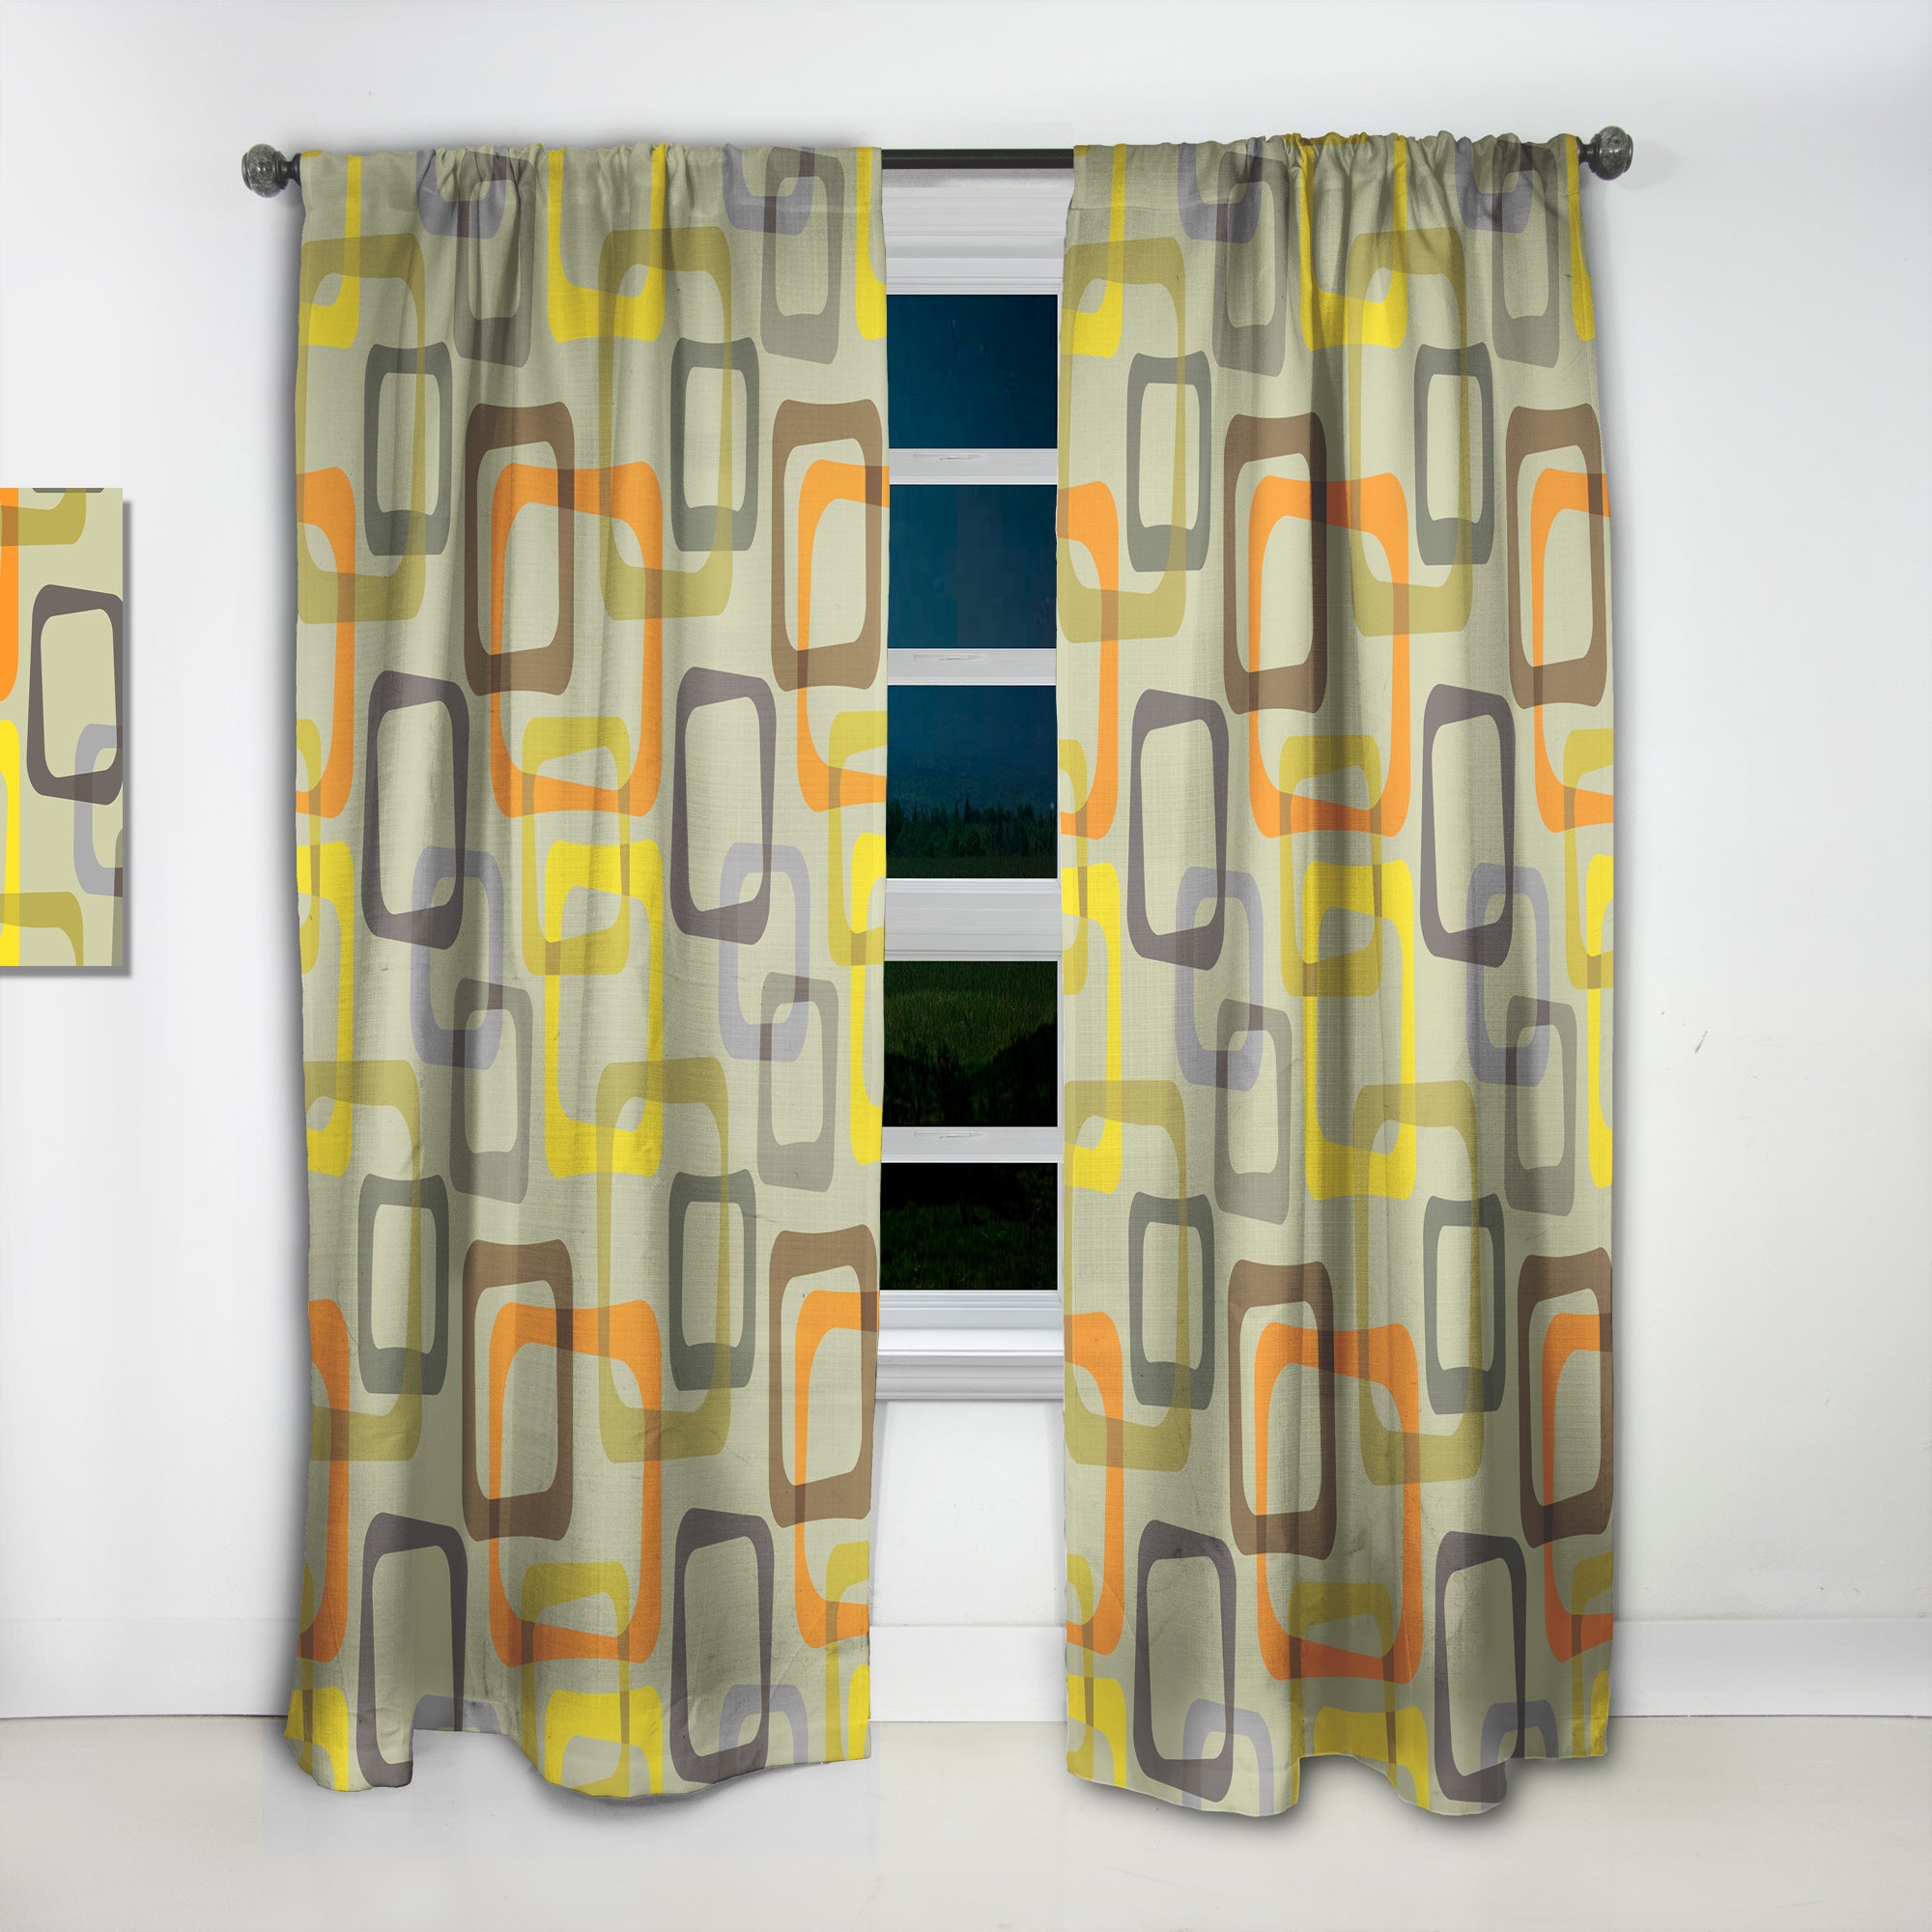 Designart 'Retro Square Design VII' Mid-Century Modern Curtain Panel